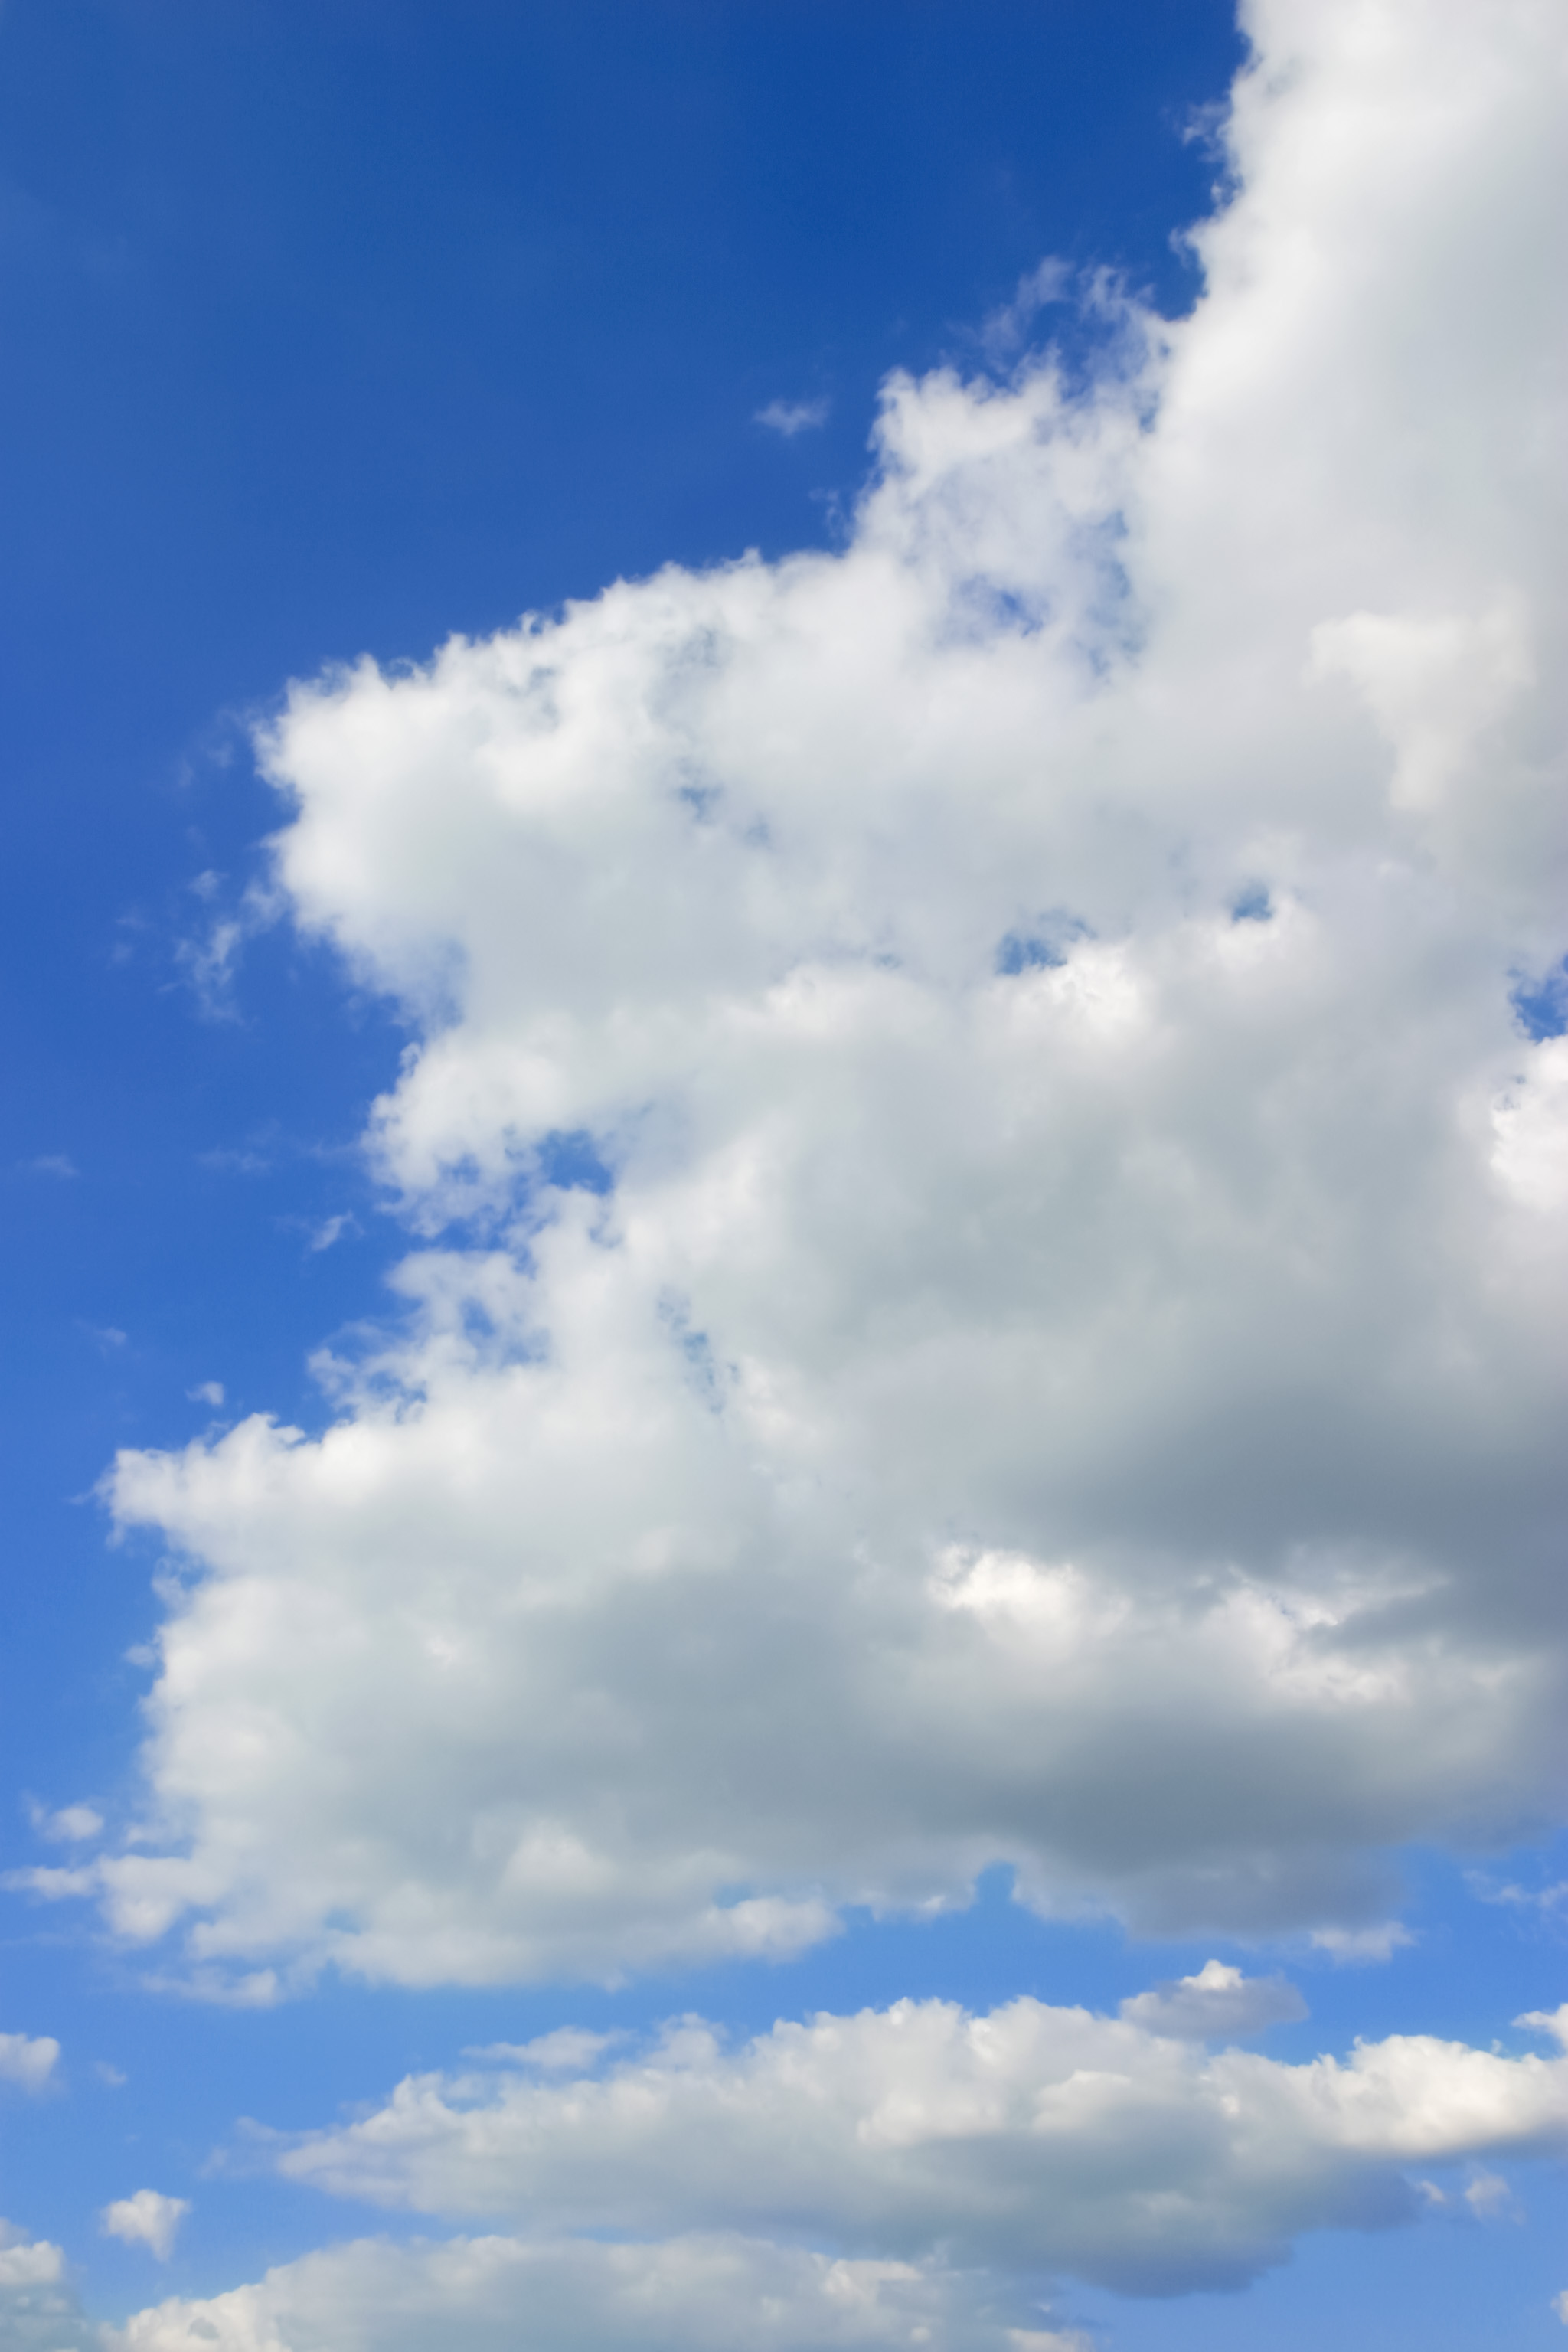 濃青色の空にまたがる大きな雲 Free Photos L/RGB/JPEG/350dpi